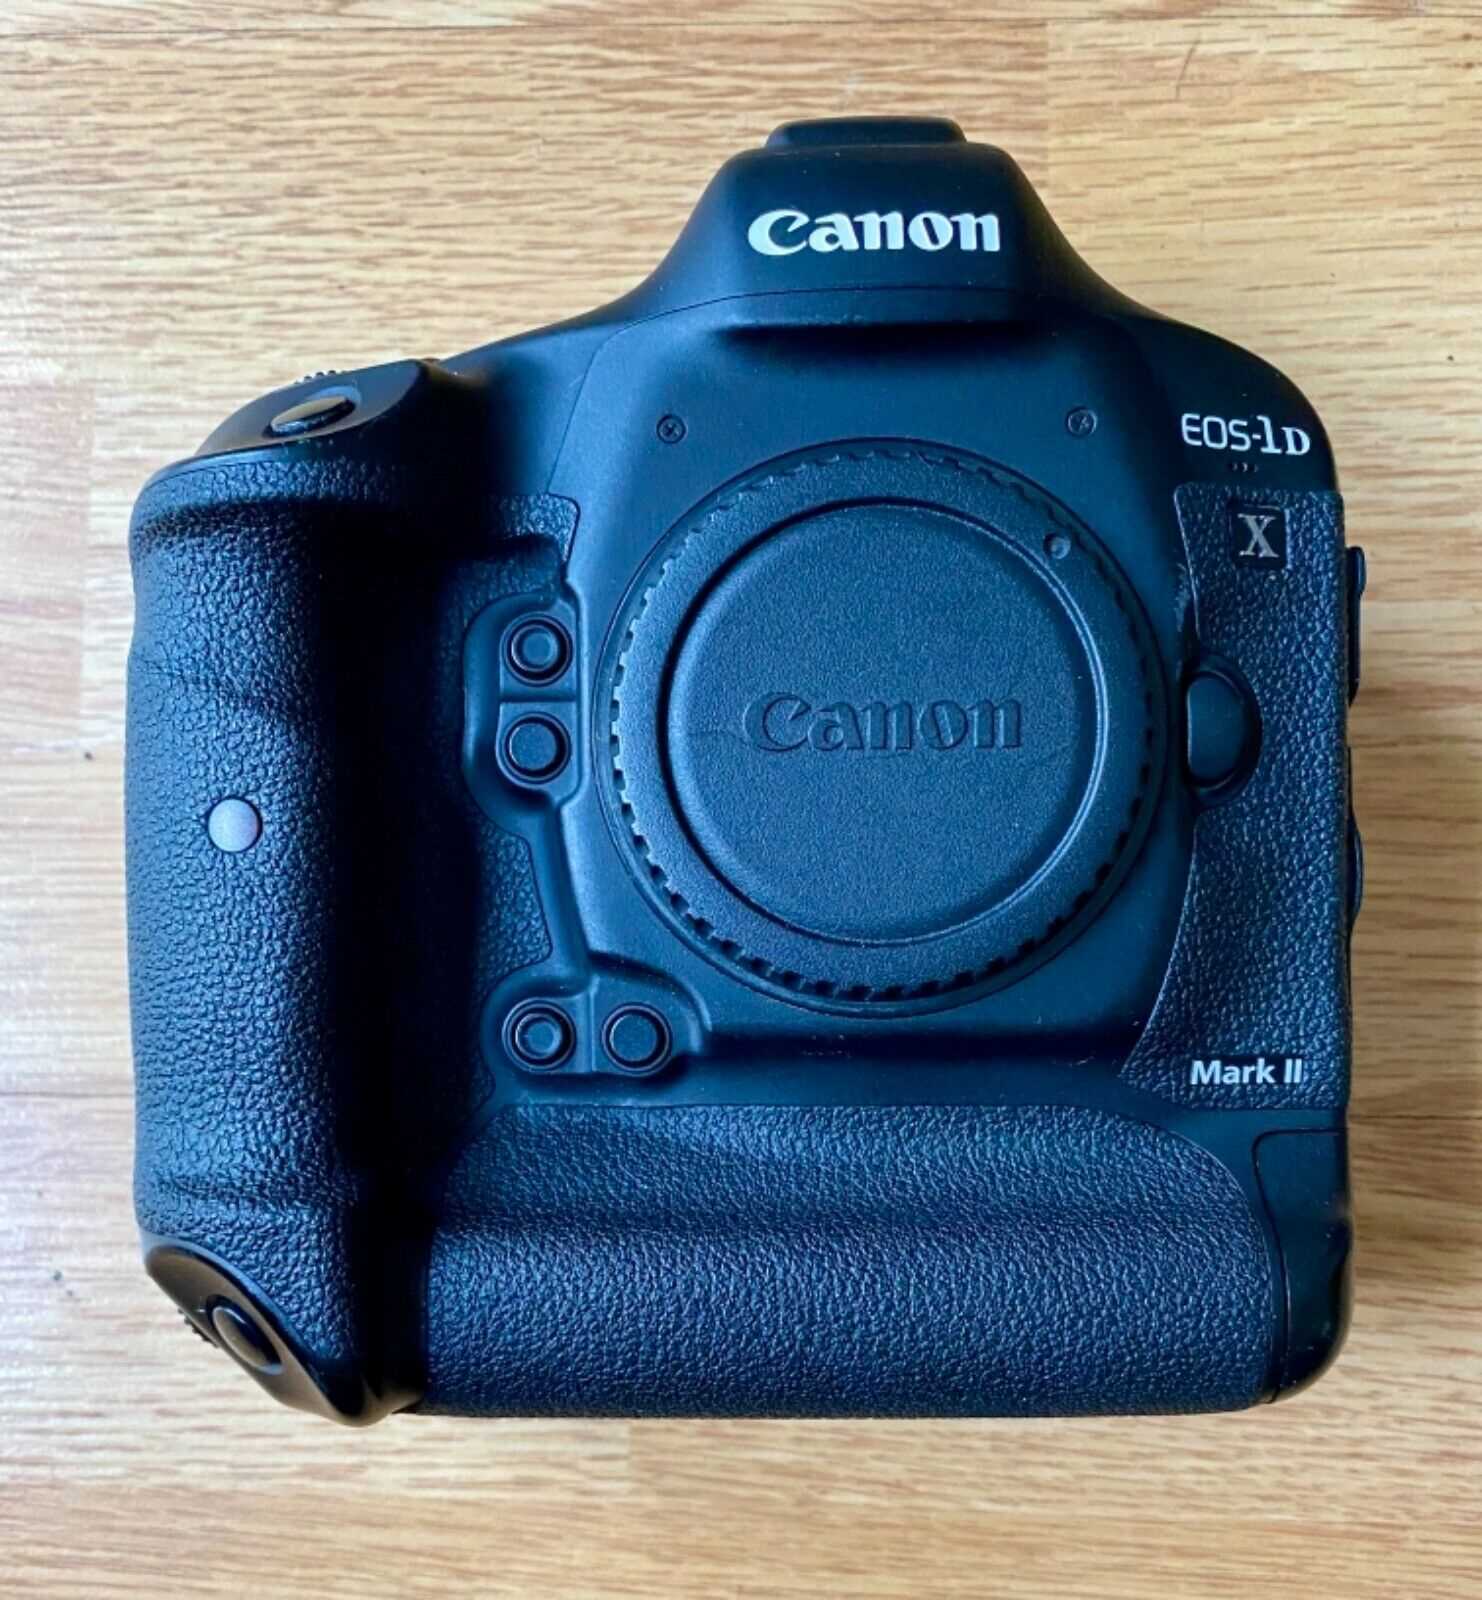 Canon EOS 5D Mark IV, Canon EOS R5, Canon EOS R6 Mirrorless Camera, Nikon D850, Nikon D780, Nikon Z 7II Mirrorless